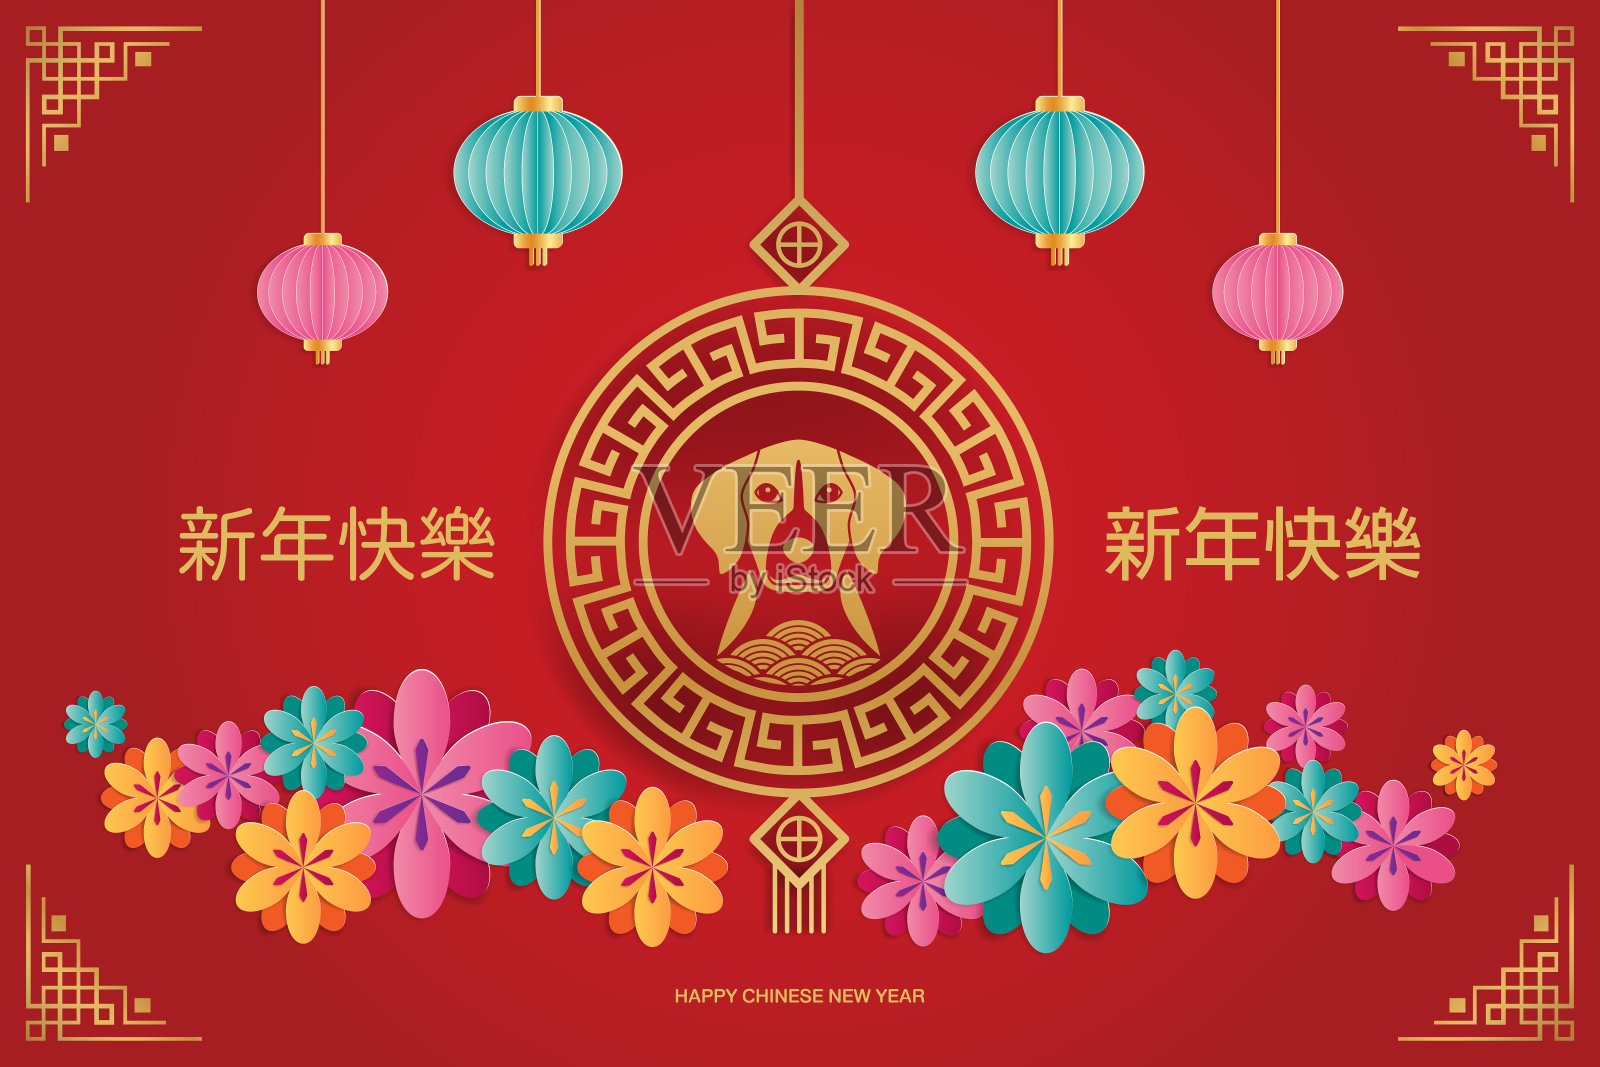 带有狗、樱花、灯笼和亚洲传统图案的中国新年贺卡。纸艺术风格。矢量插图。设计模板素材